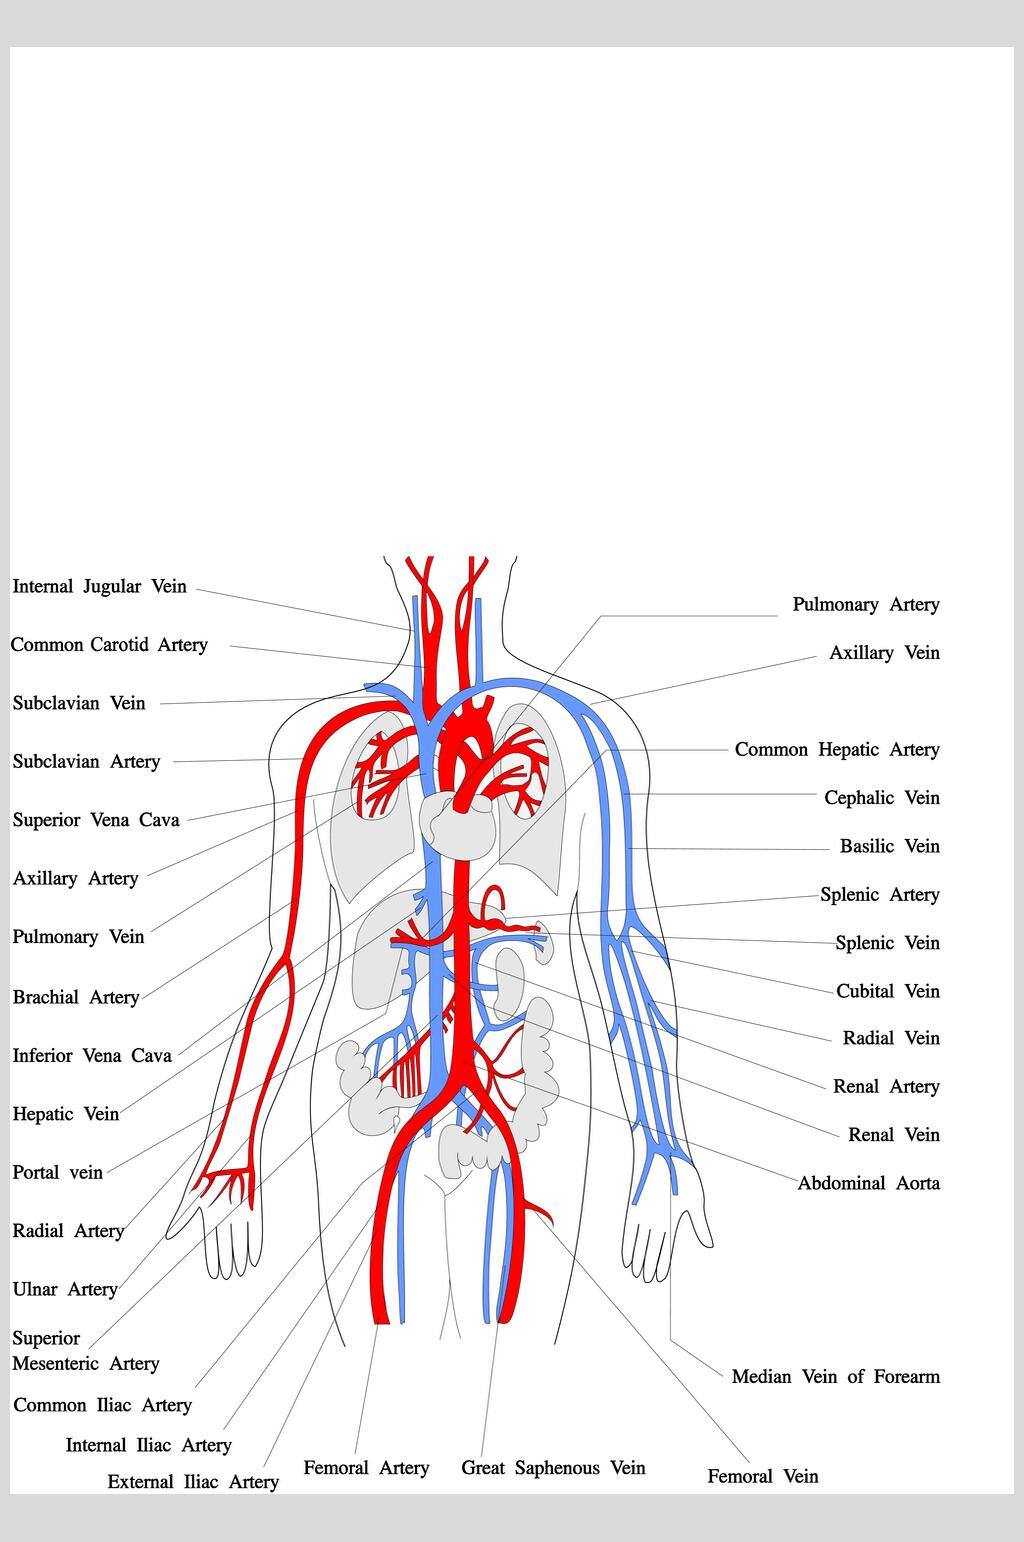 全身动脉系统解剖图图片